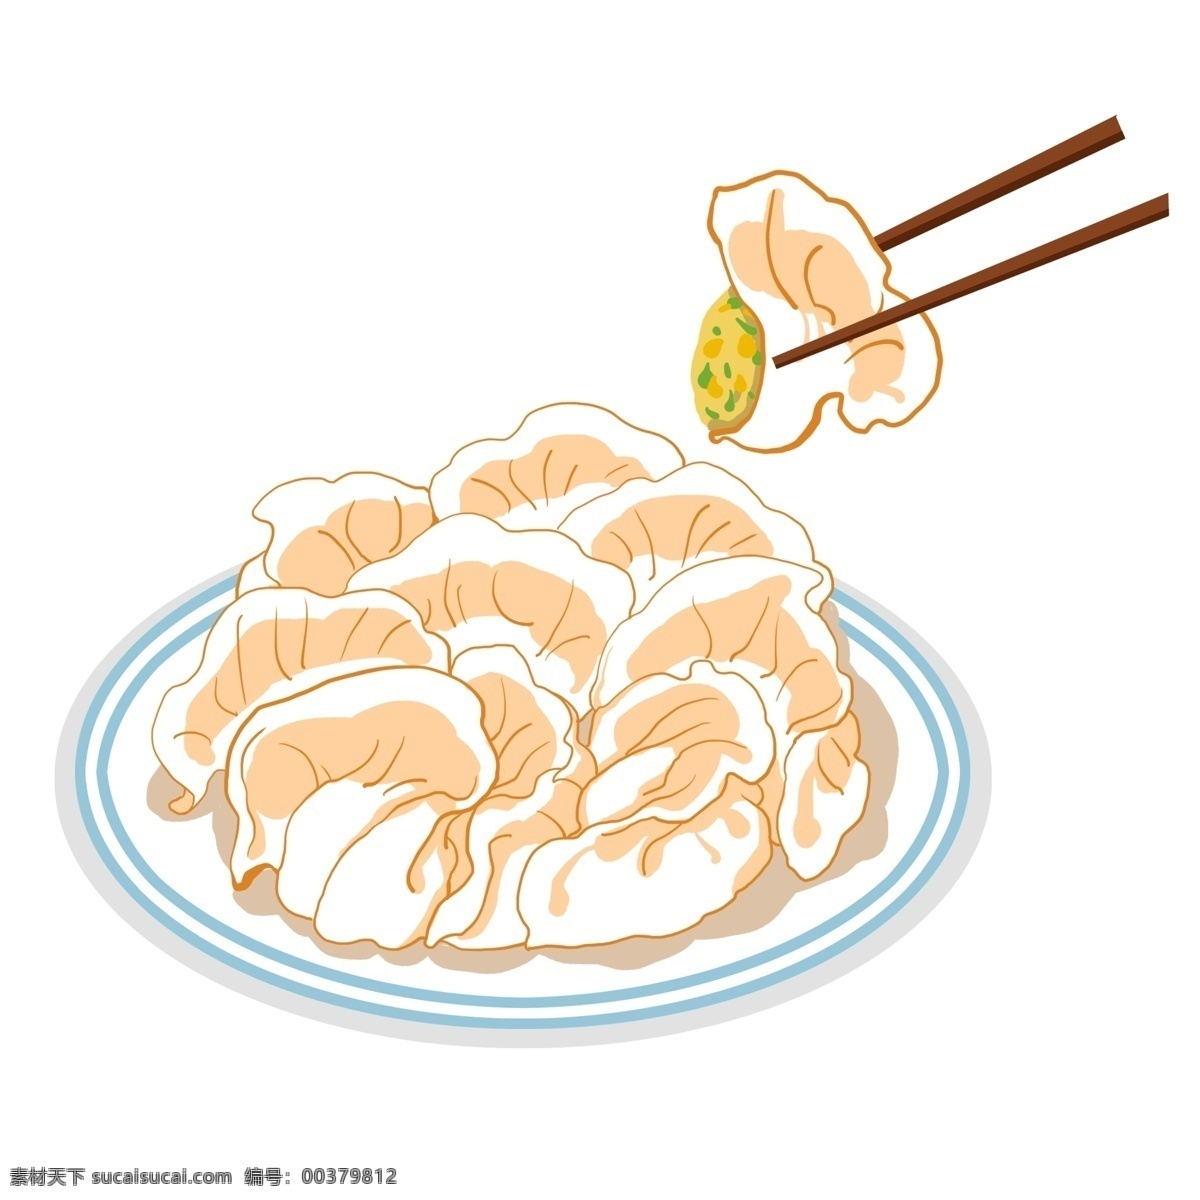 盘 饺子 手绘 插画 筷子 盘子 美食 手绘饺子 饺子插画 水饺 食品 中国传统 民俗 特色美食